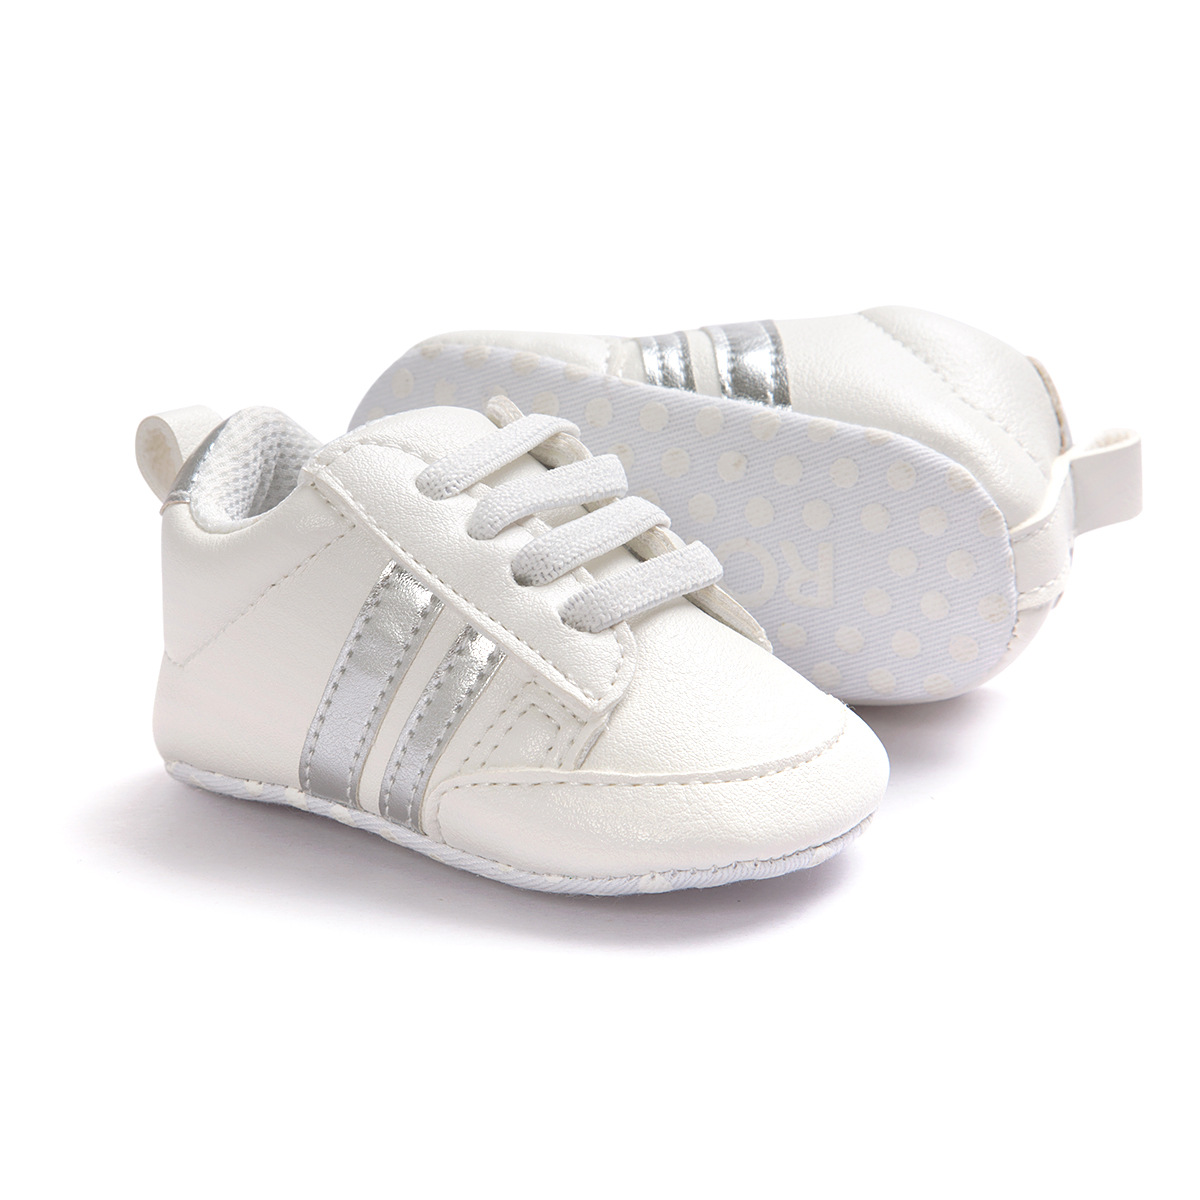 Chaussures bébé en PU artificiel - Ref 3436666 Image 139